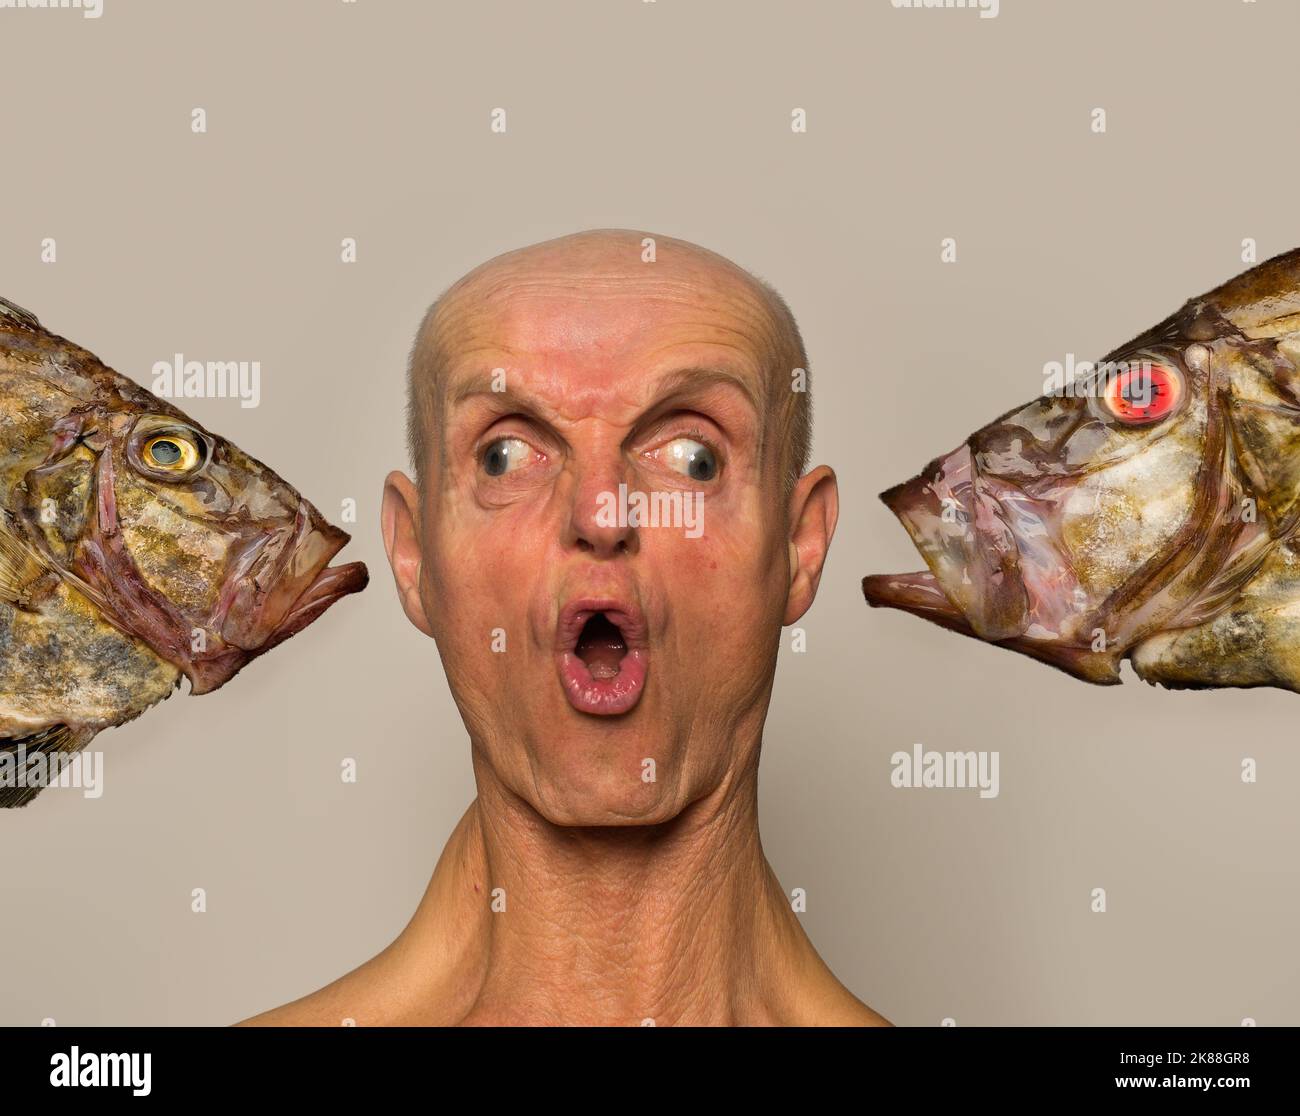 Fish Face, ein freakisches Porträt eines Mannes und eines Fisches Stockfoto